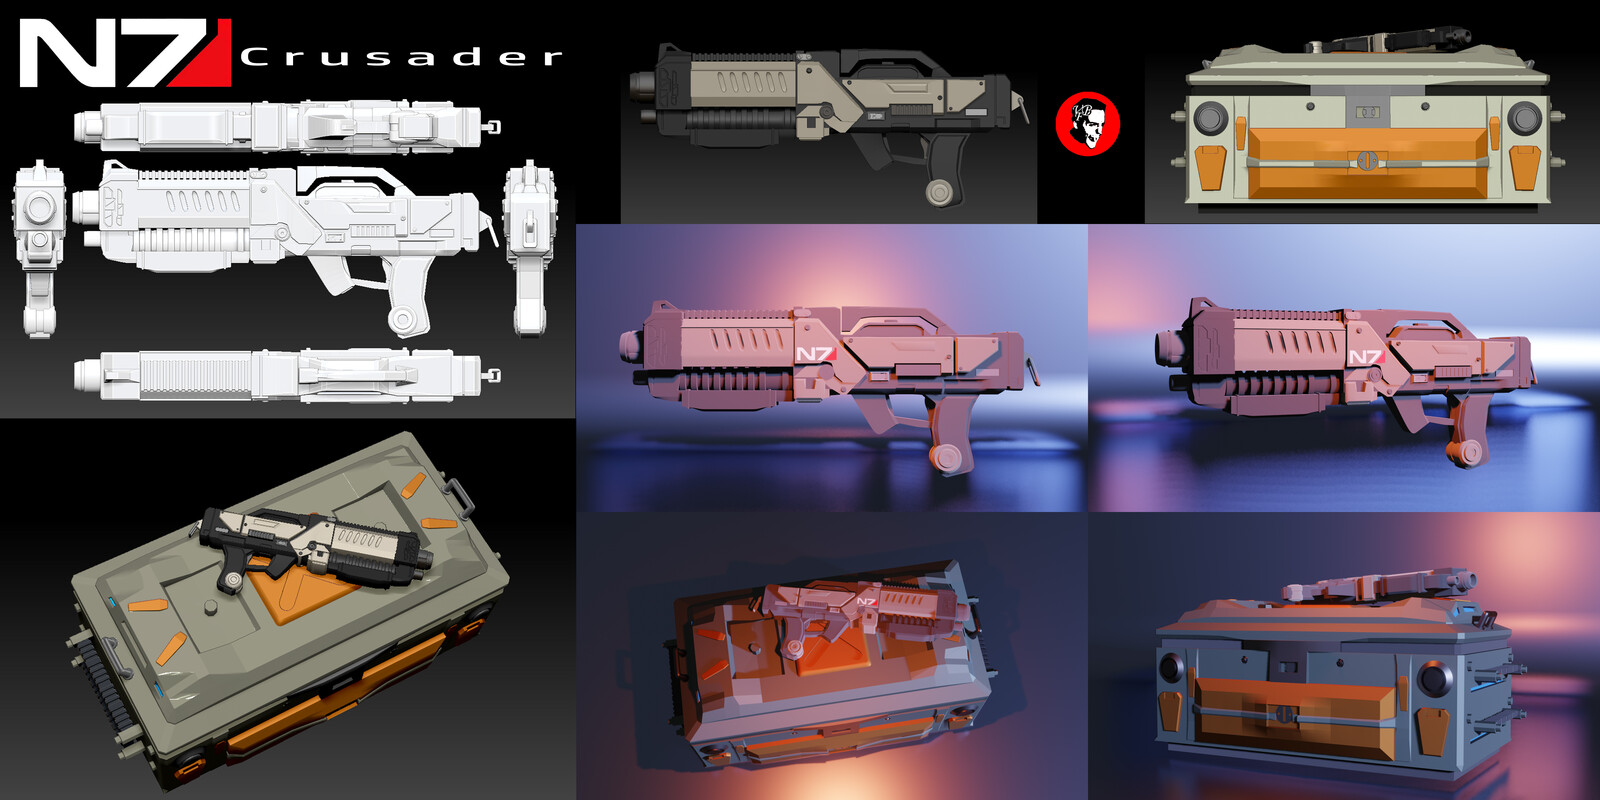 Some props rendered in Blender